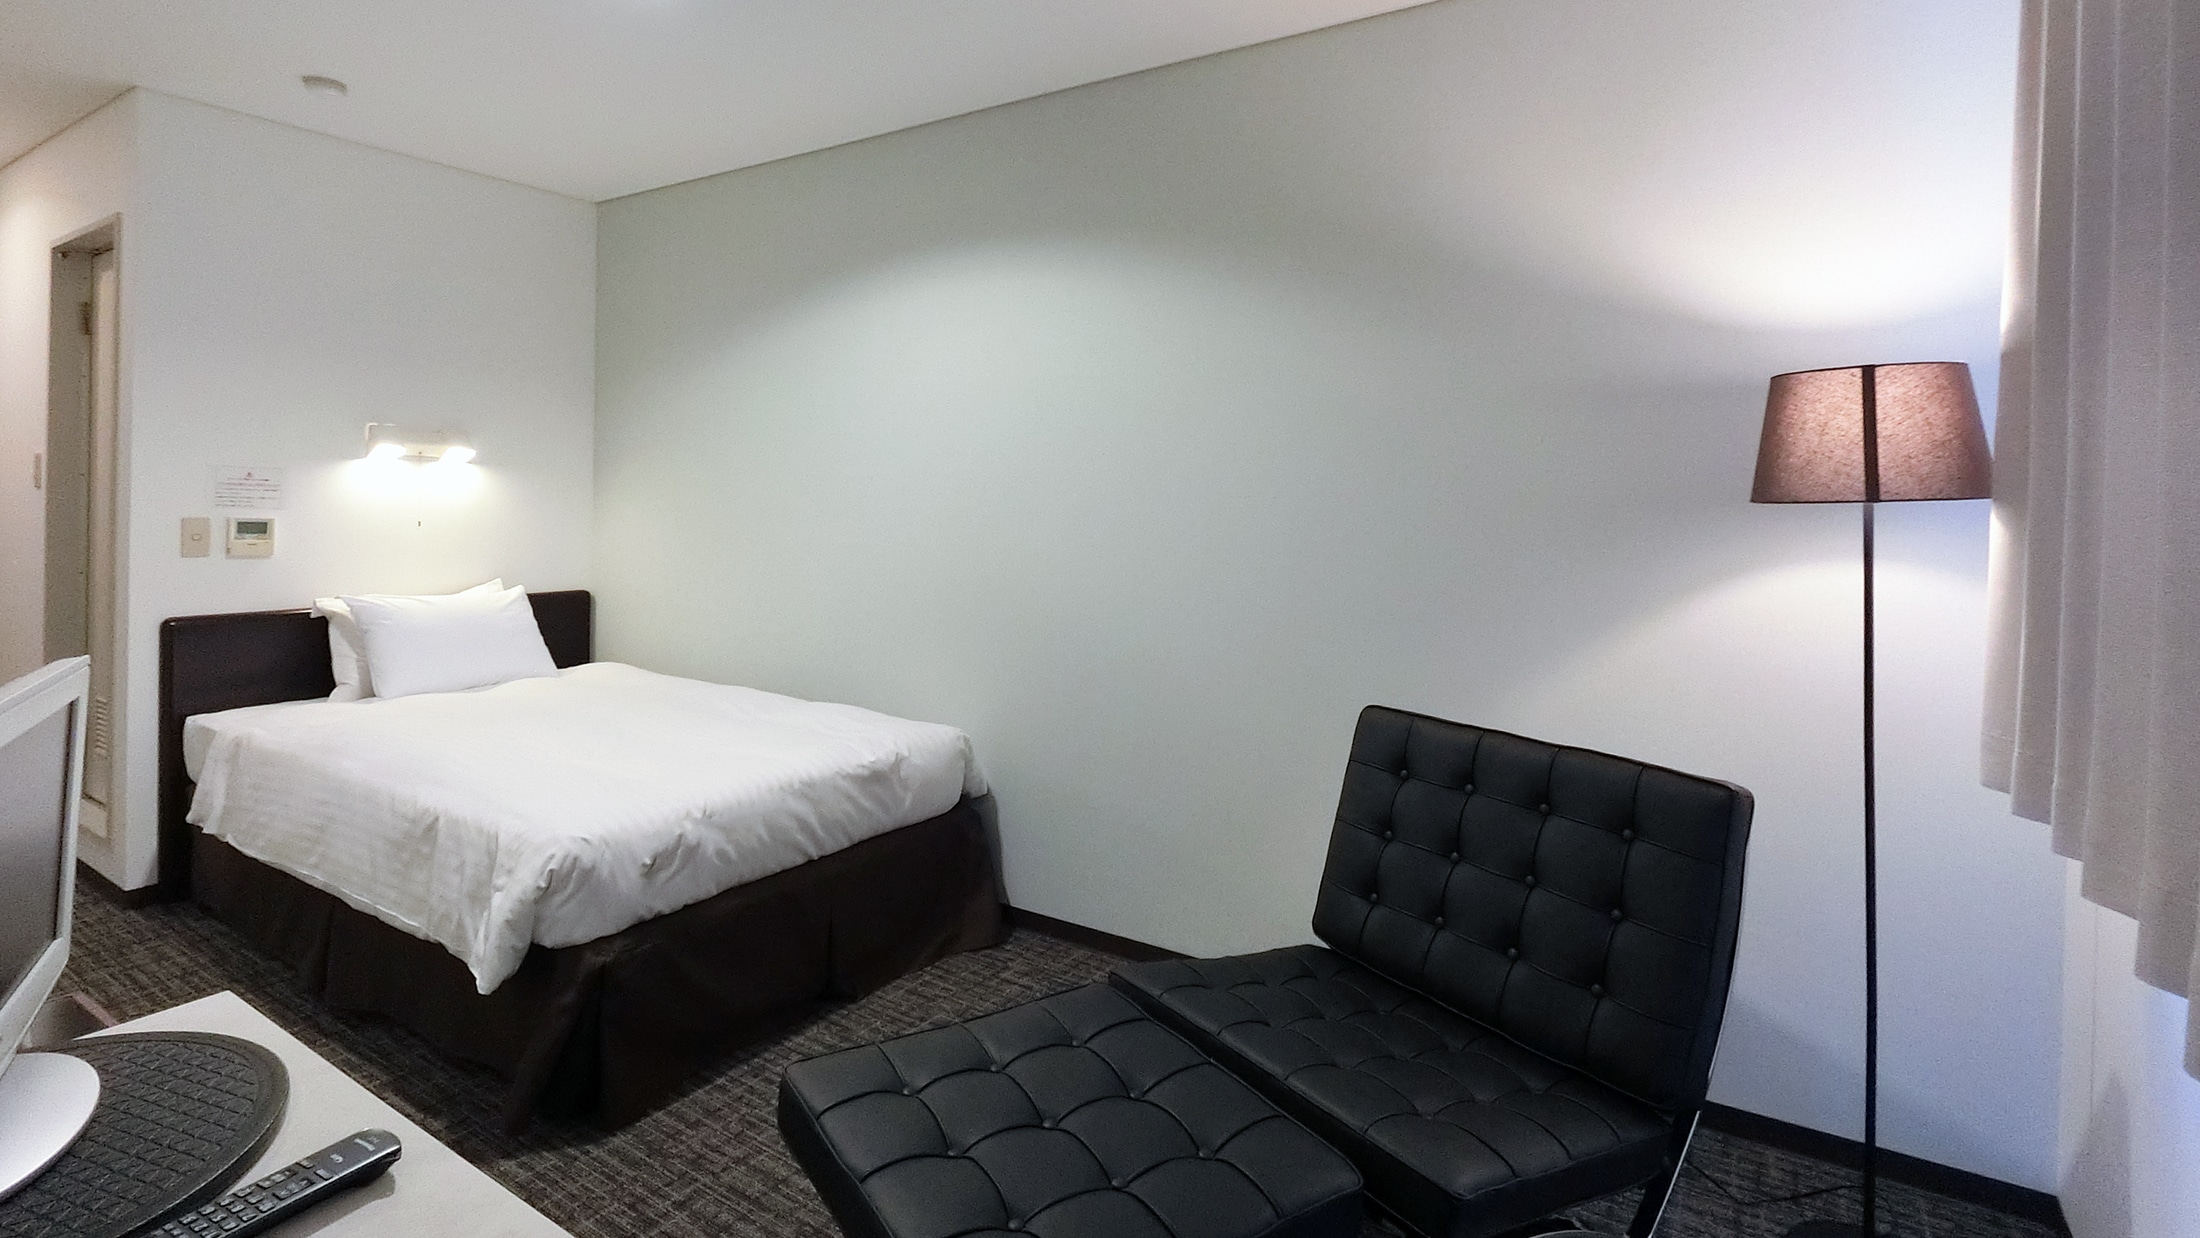 [อาคารทิศใต้] คอมฟอร์ท เตียงกึ่งเตียงใหญ่ Simmons Bed Studio Twin ข้อมูลจำเพาะ มี Wi-Fi & มีสาย